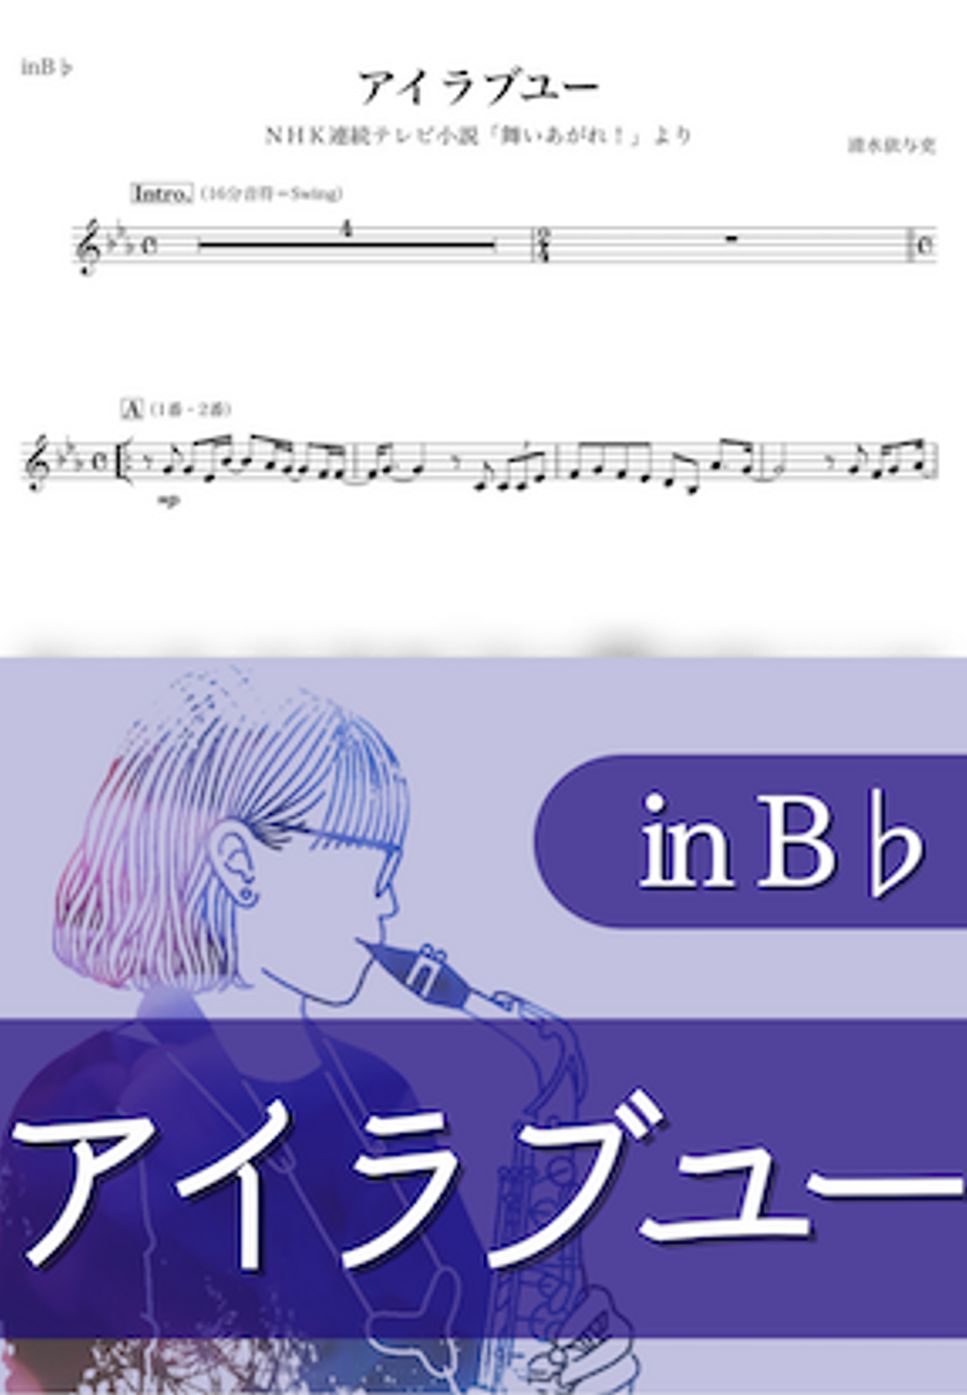 back number - アイラブユー (B♭) by kanamusic